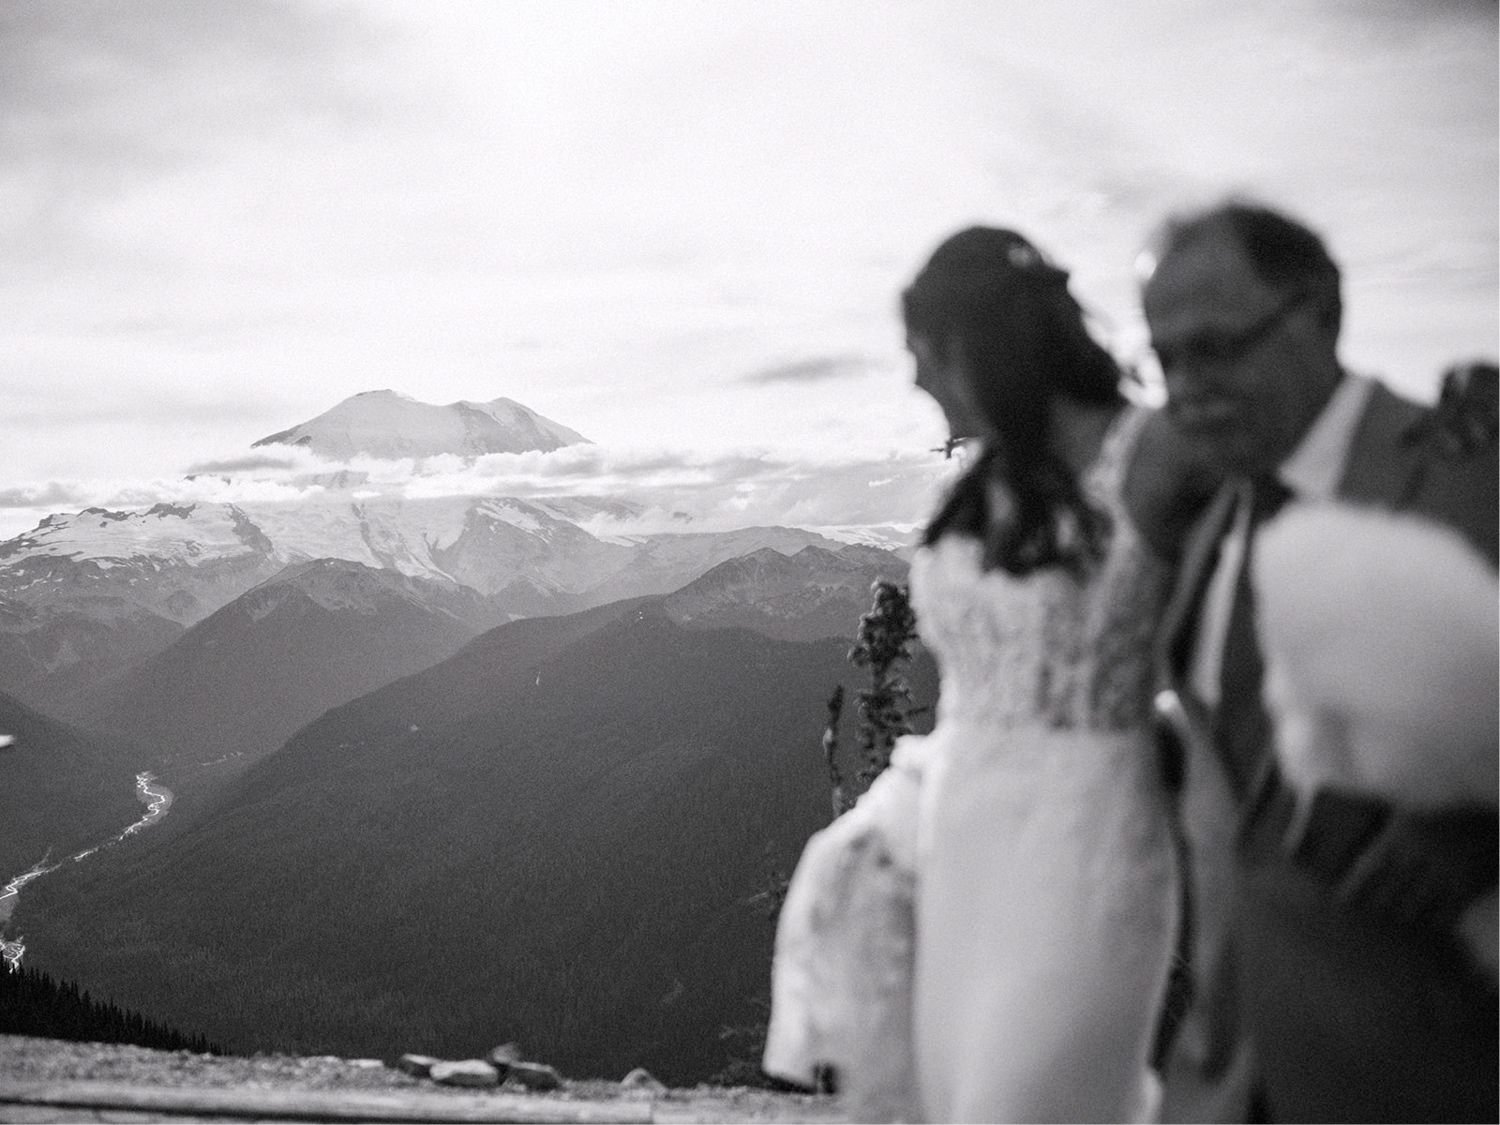 138_Crystal Mountain Resort wedding photos on a mountaintop.jpg